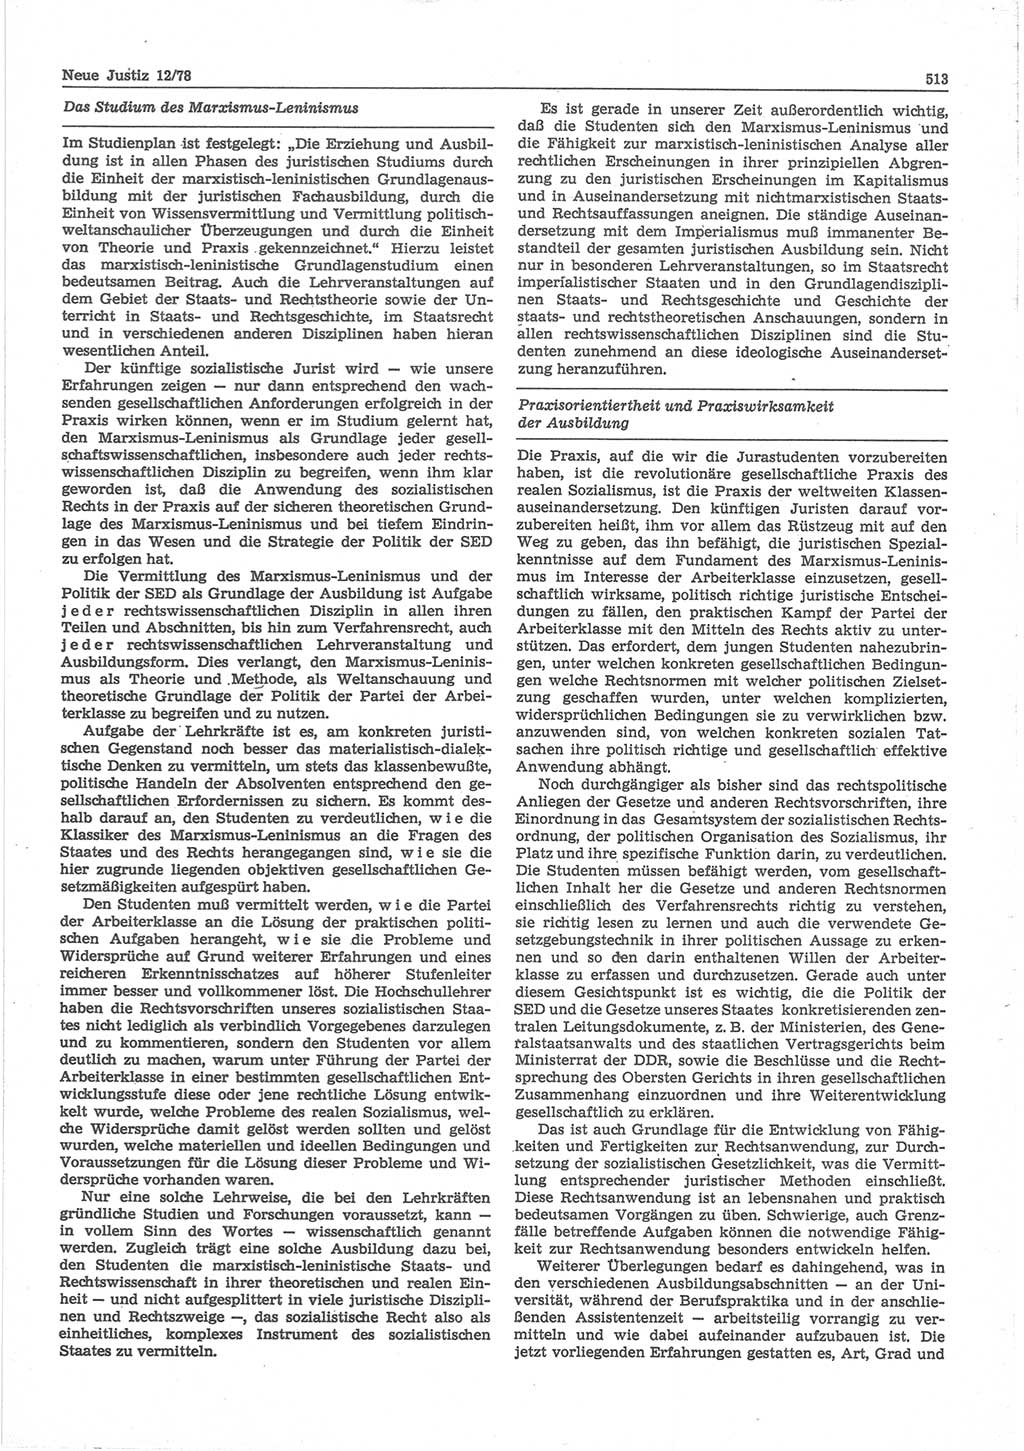 Neue Justiz (NJ), Zeitschrift für sozialistisches Recht und Gesetzlichkeit [Deutsche Demokratische Republik (DDR)], 32. Jahrgang 1978, Seite 513 (NJ DDR 1978, S. 513)